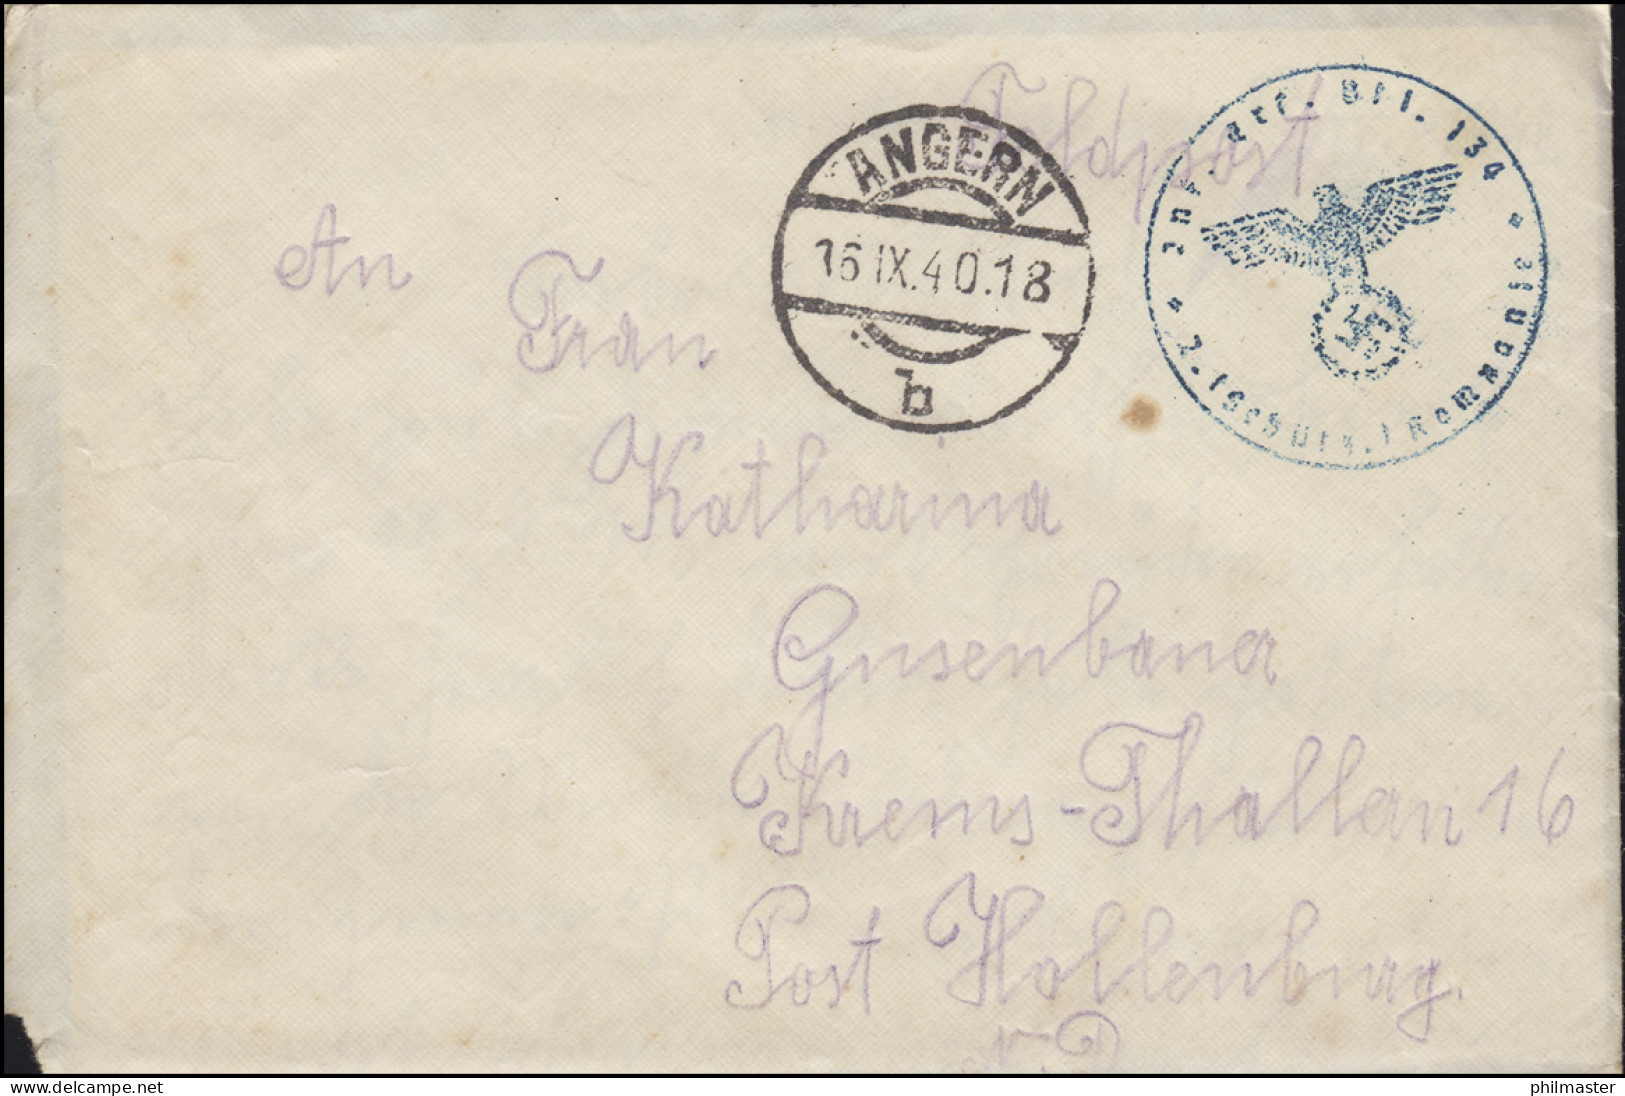 Feldpost BS Inf. Ers. Btl. 134 Auf Brief ANGERN 16.9.1940 Nach Krems-Thallern - Occupation 1938-45